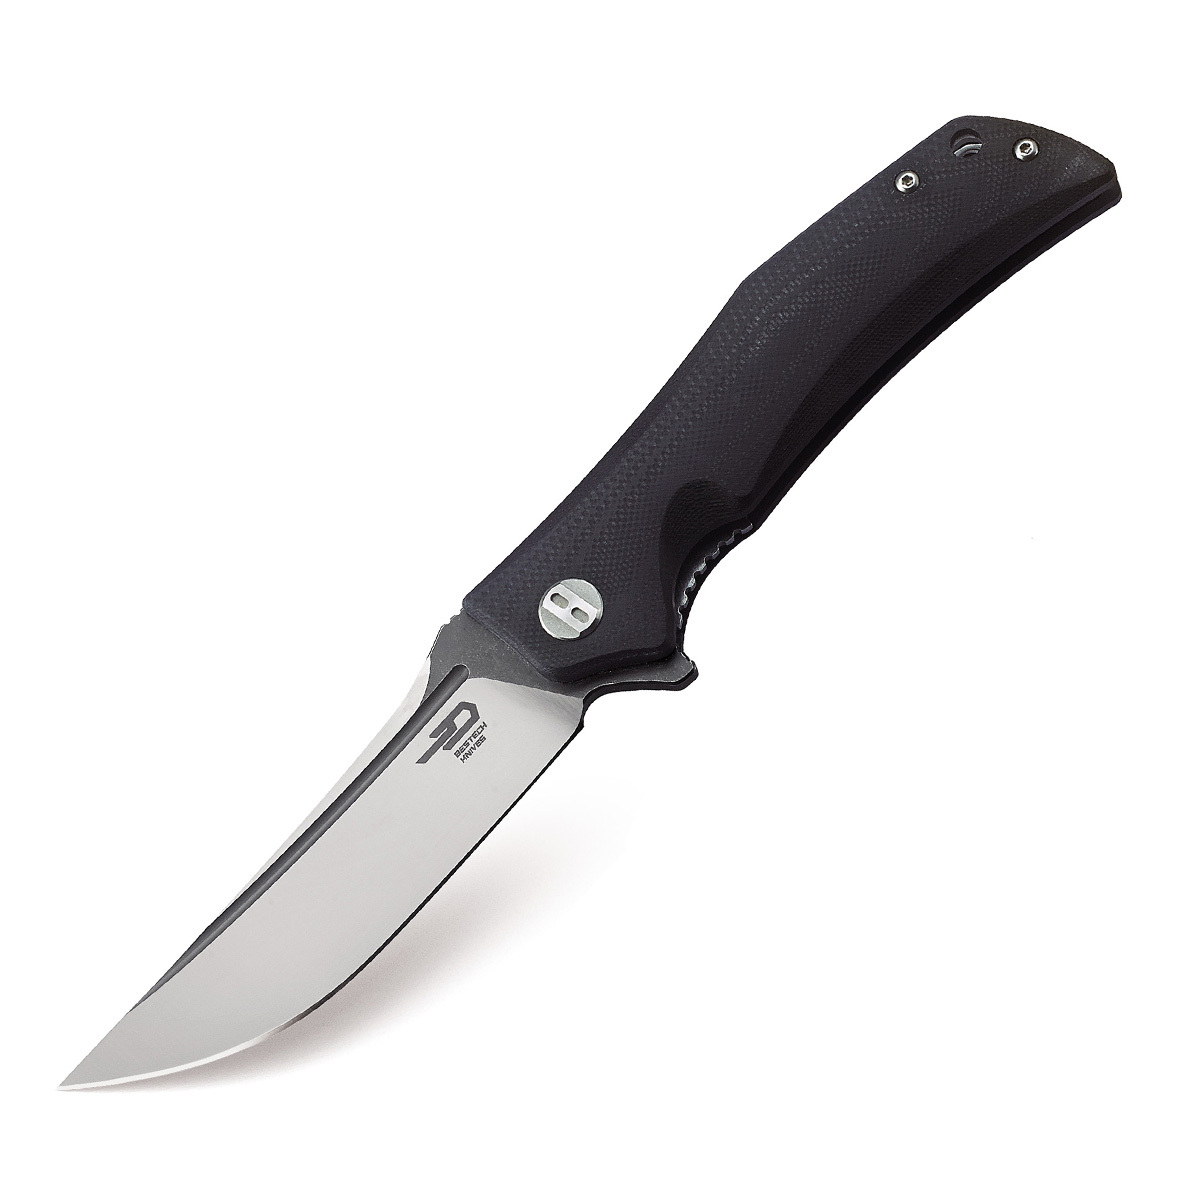 Складной нож Bestech Scimitar, сталь D2, рукоять G10 складной нож bestech fin сталь 14c28n   satin g10